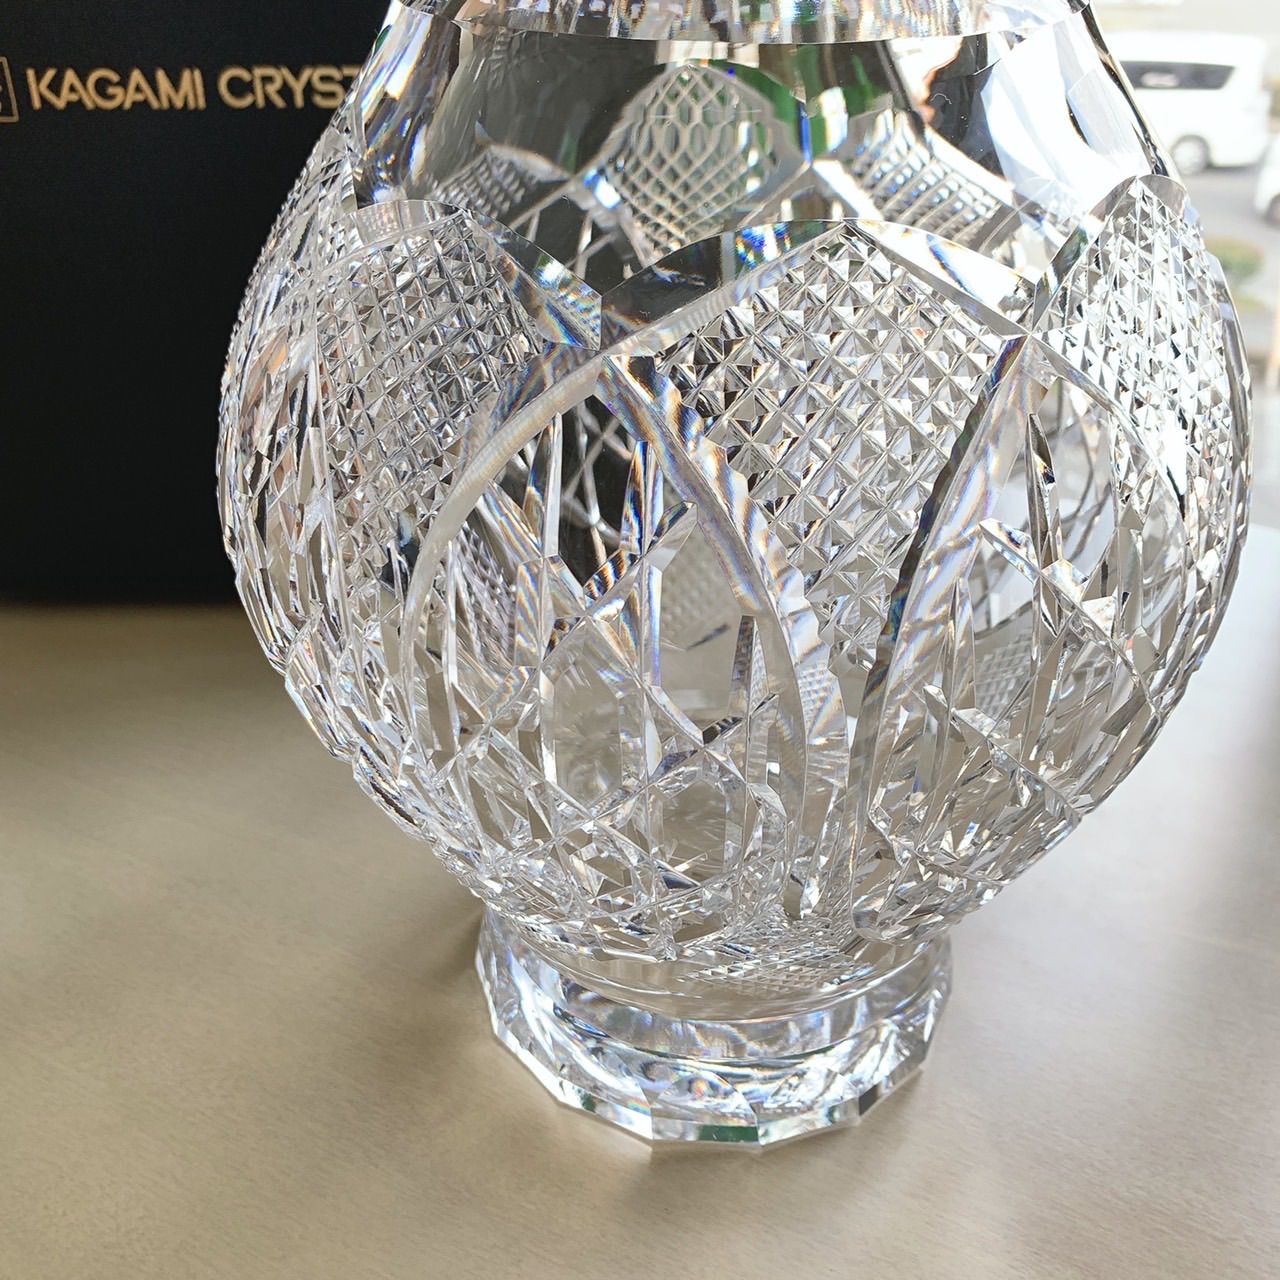 カガミクリスタル花瓶F701 メイドインスロバキア クリスタル製